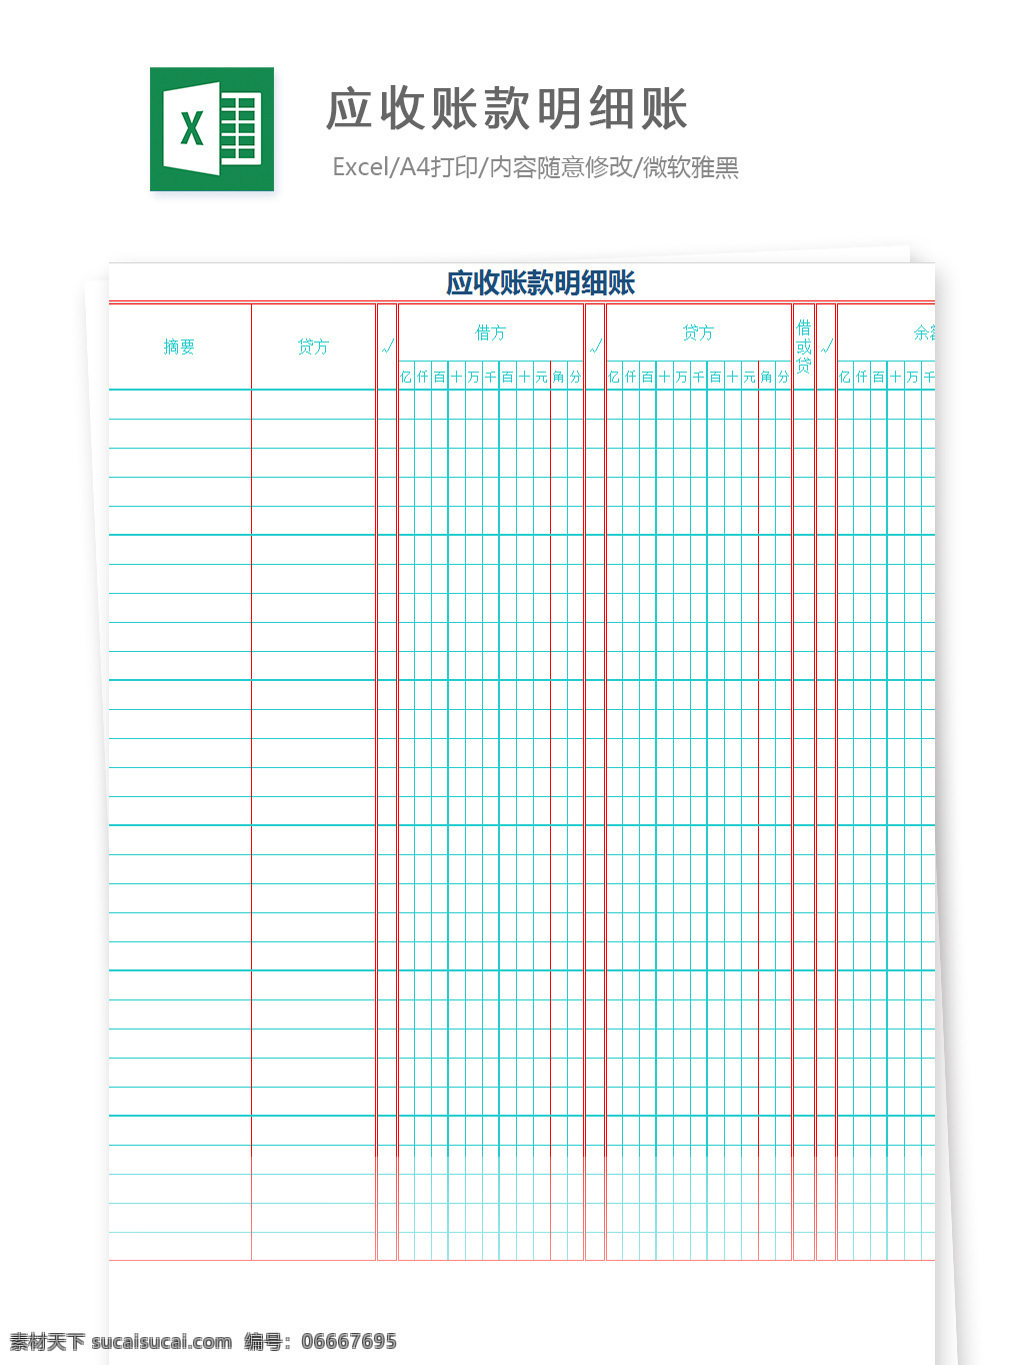 应收 账款 明细账 excel 图表 图表模板 模板 文档 表格 表格模板 自动变换 表格设计 应收账款